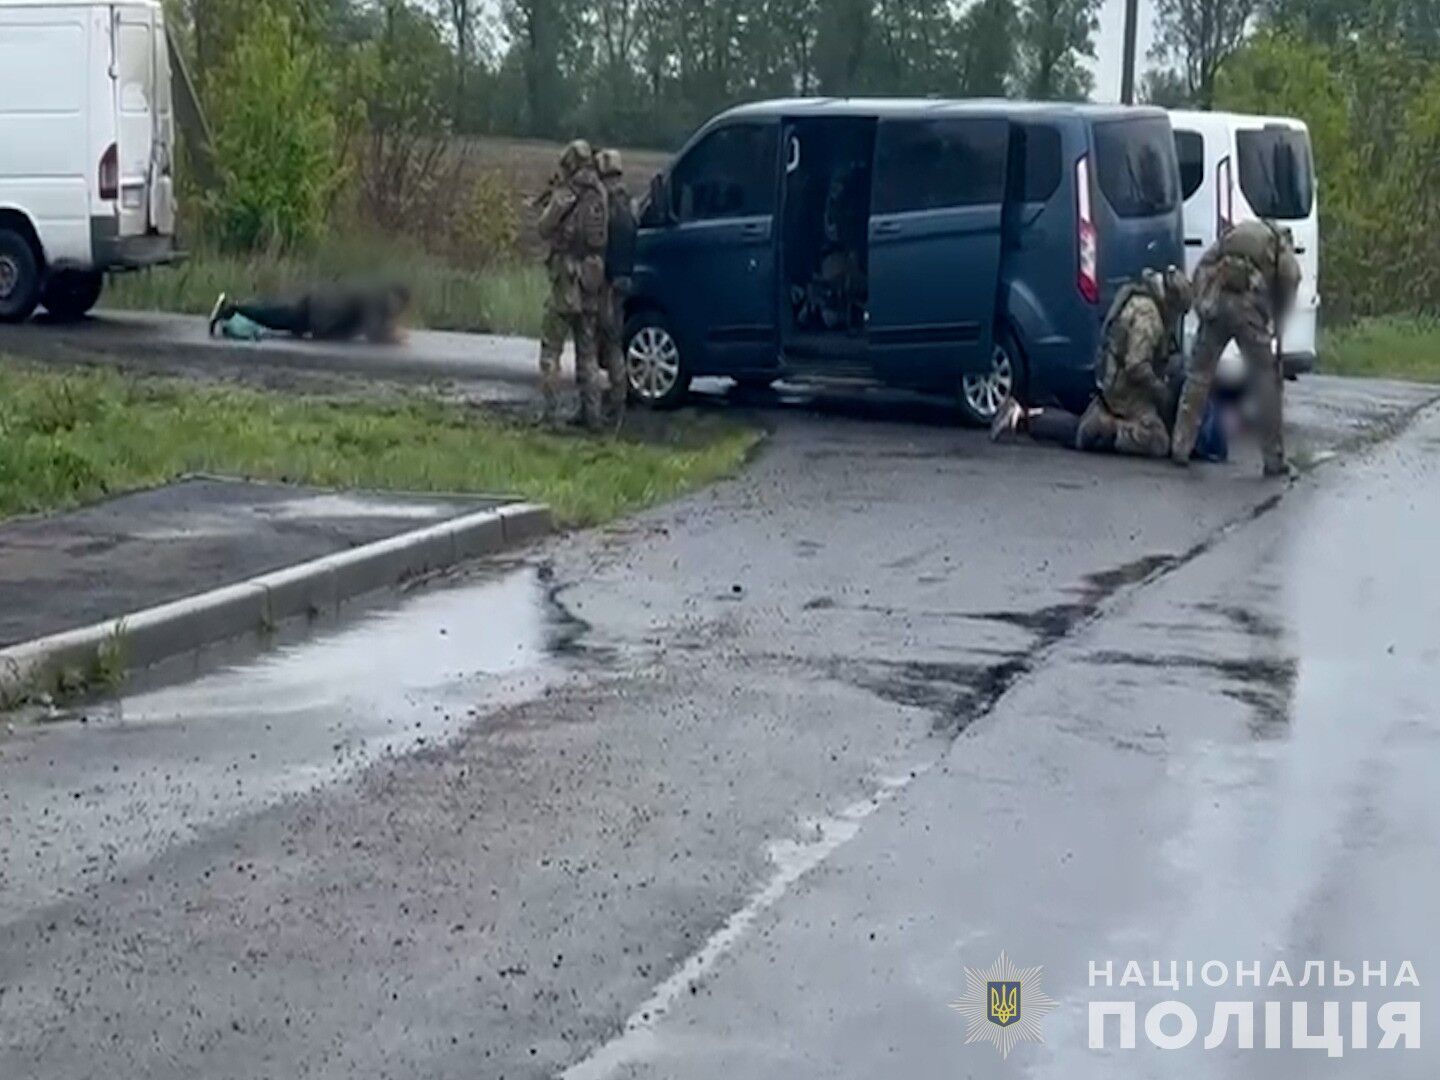 Задержаны нападающие, которые убили полицейского в Винницкой области: им грозит пожизненное. Детали и фото